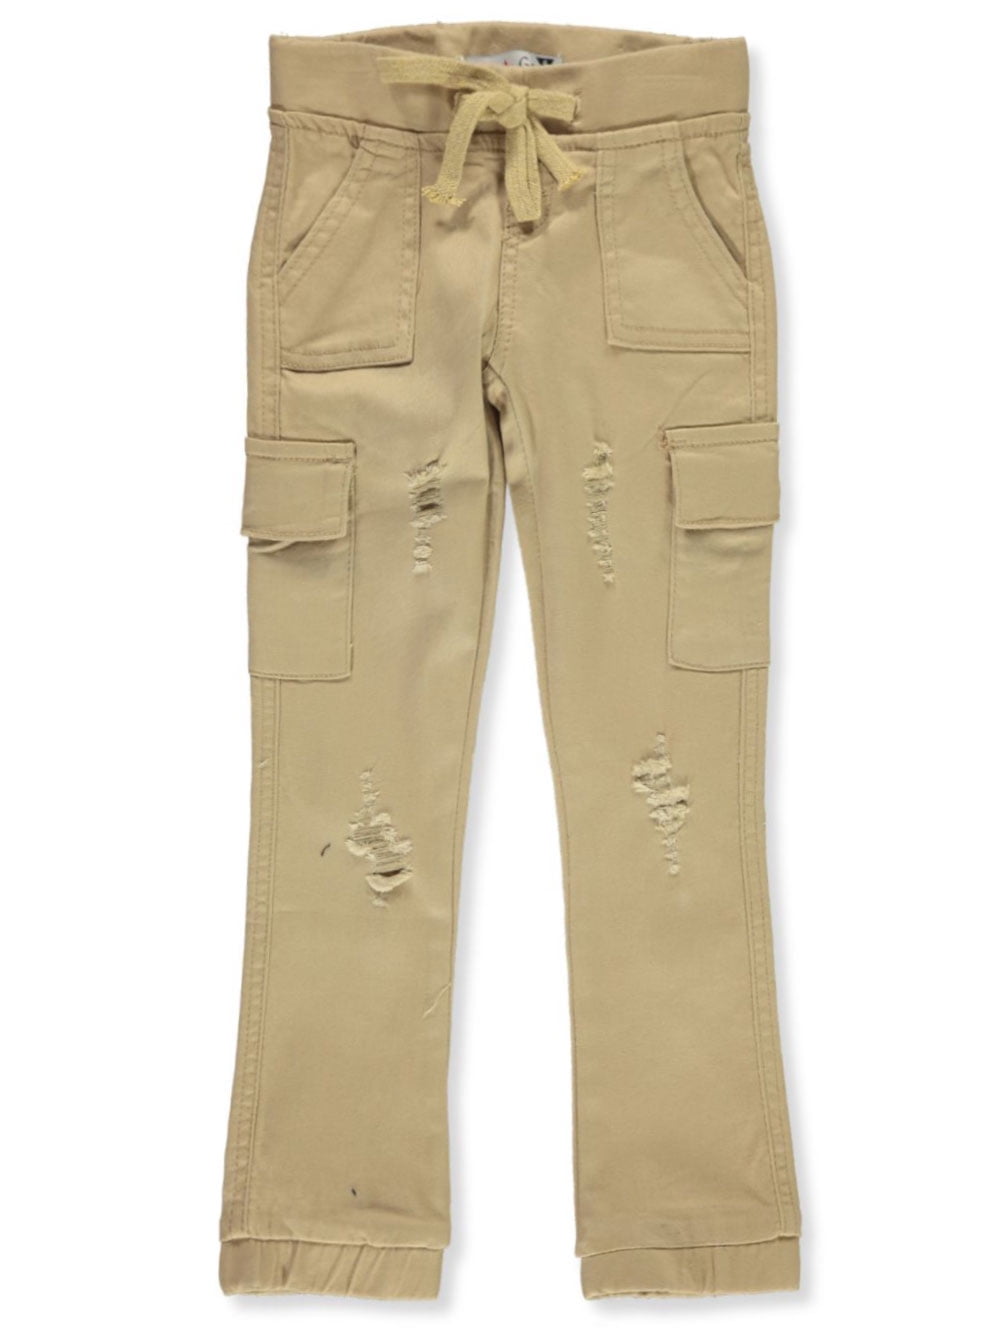 Teen Gs Girls' Twill Cargo Pants - khaki, 2t (Toddler) - Walmart.com